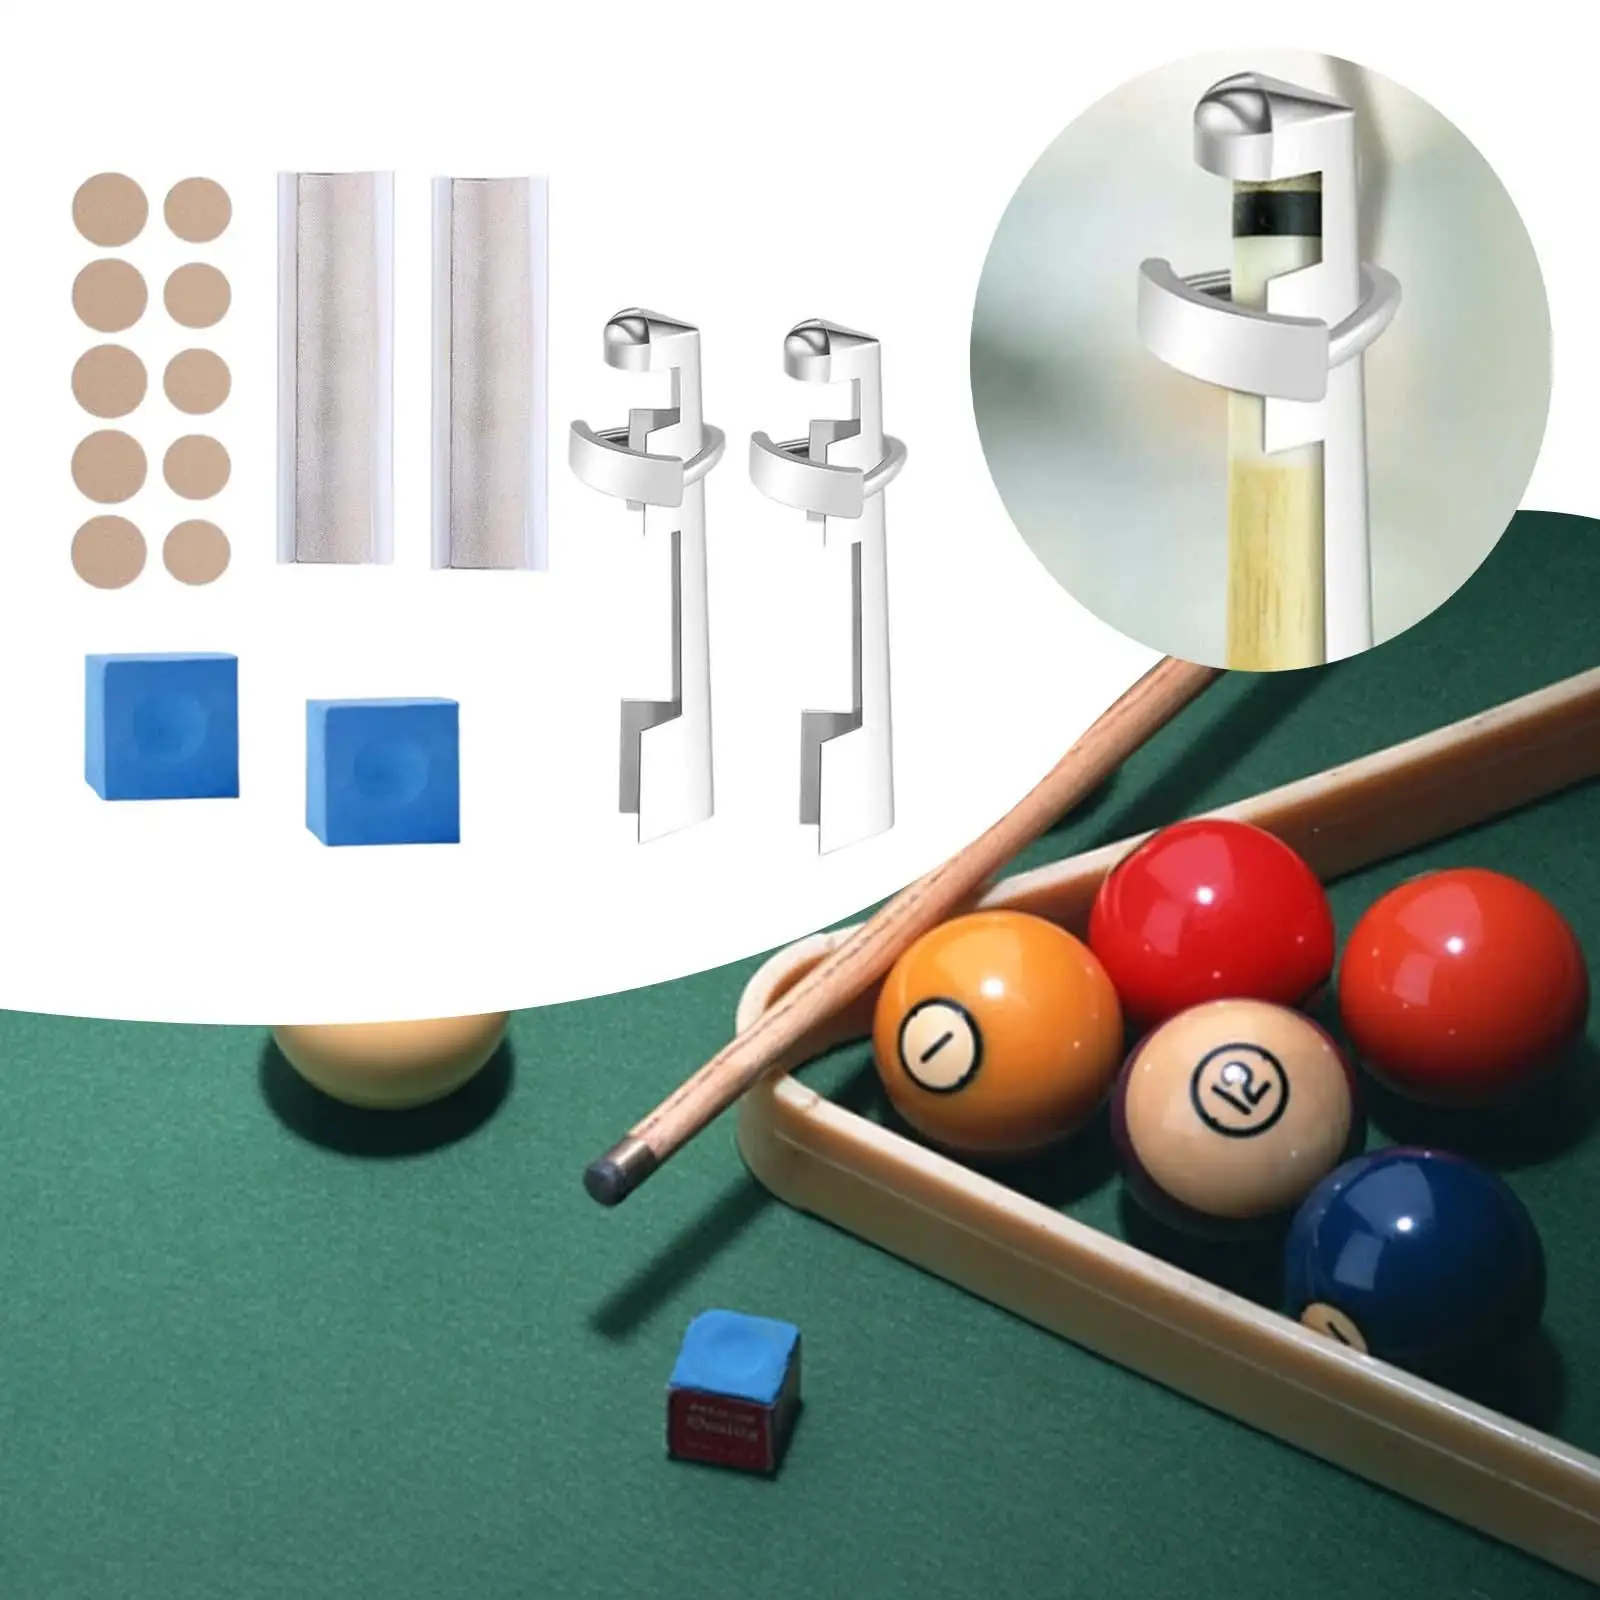 16x Pool Cue Tip Repair Kit Billiard Cue Tips Replacement Kit Cue Tip Clamp Snooker Pool Supplies Cue Repair Set Pool Table